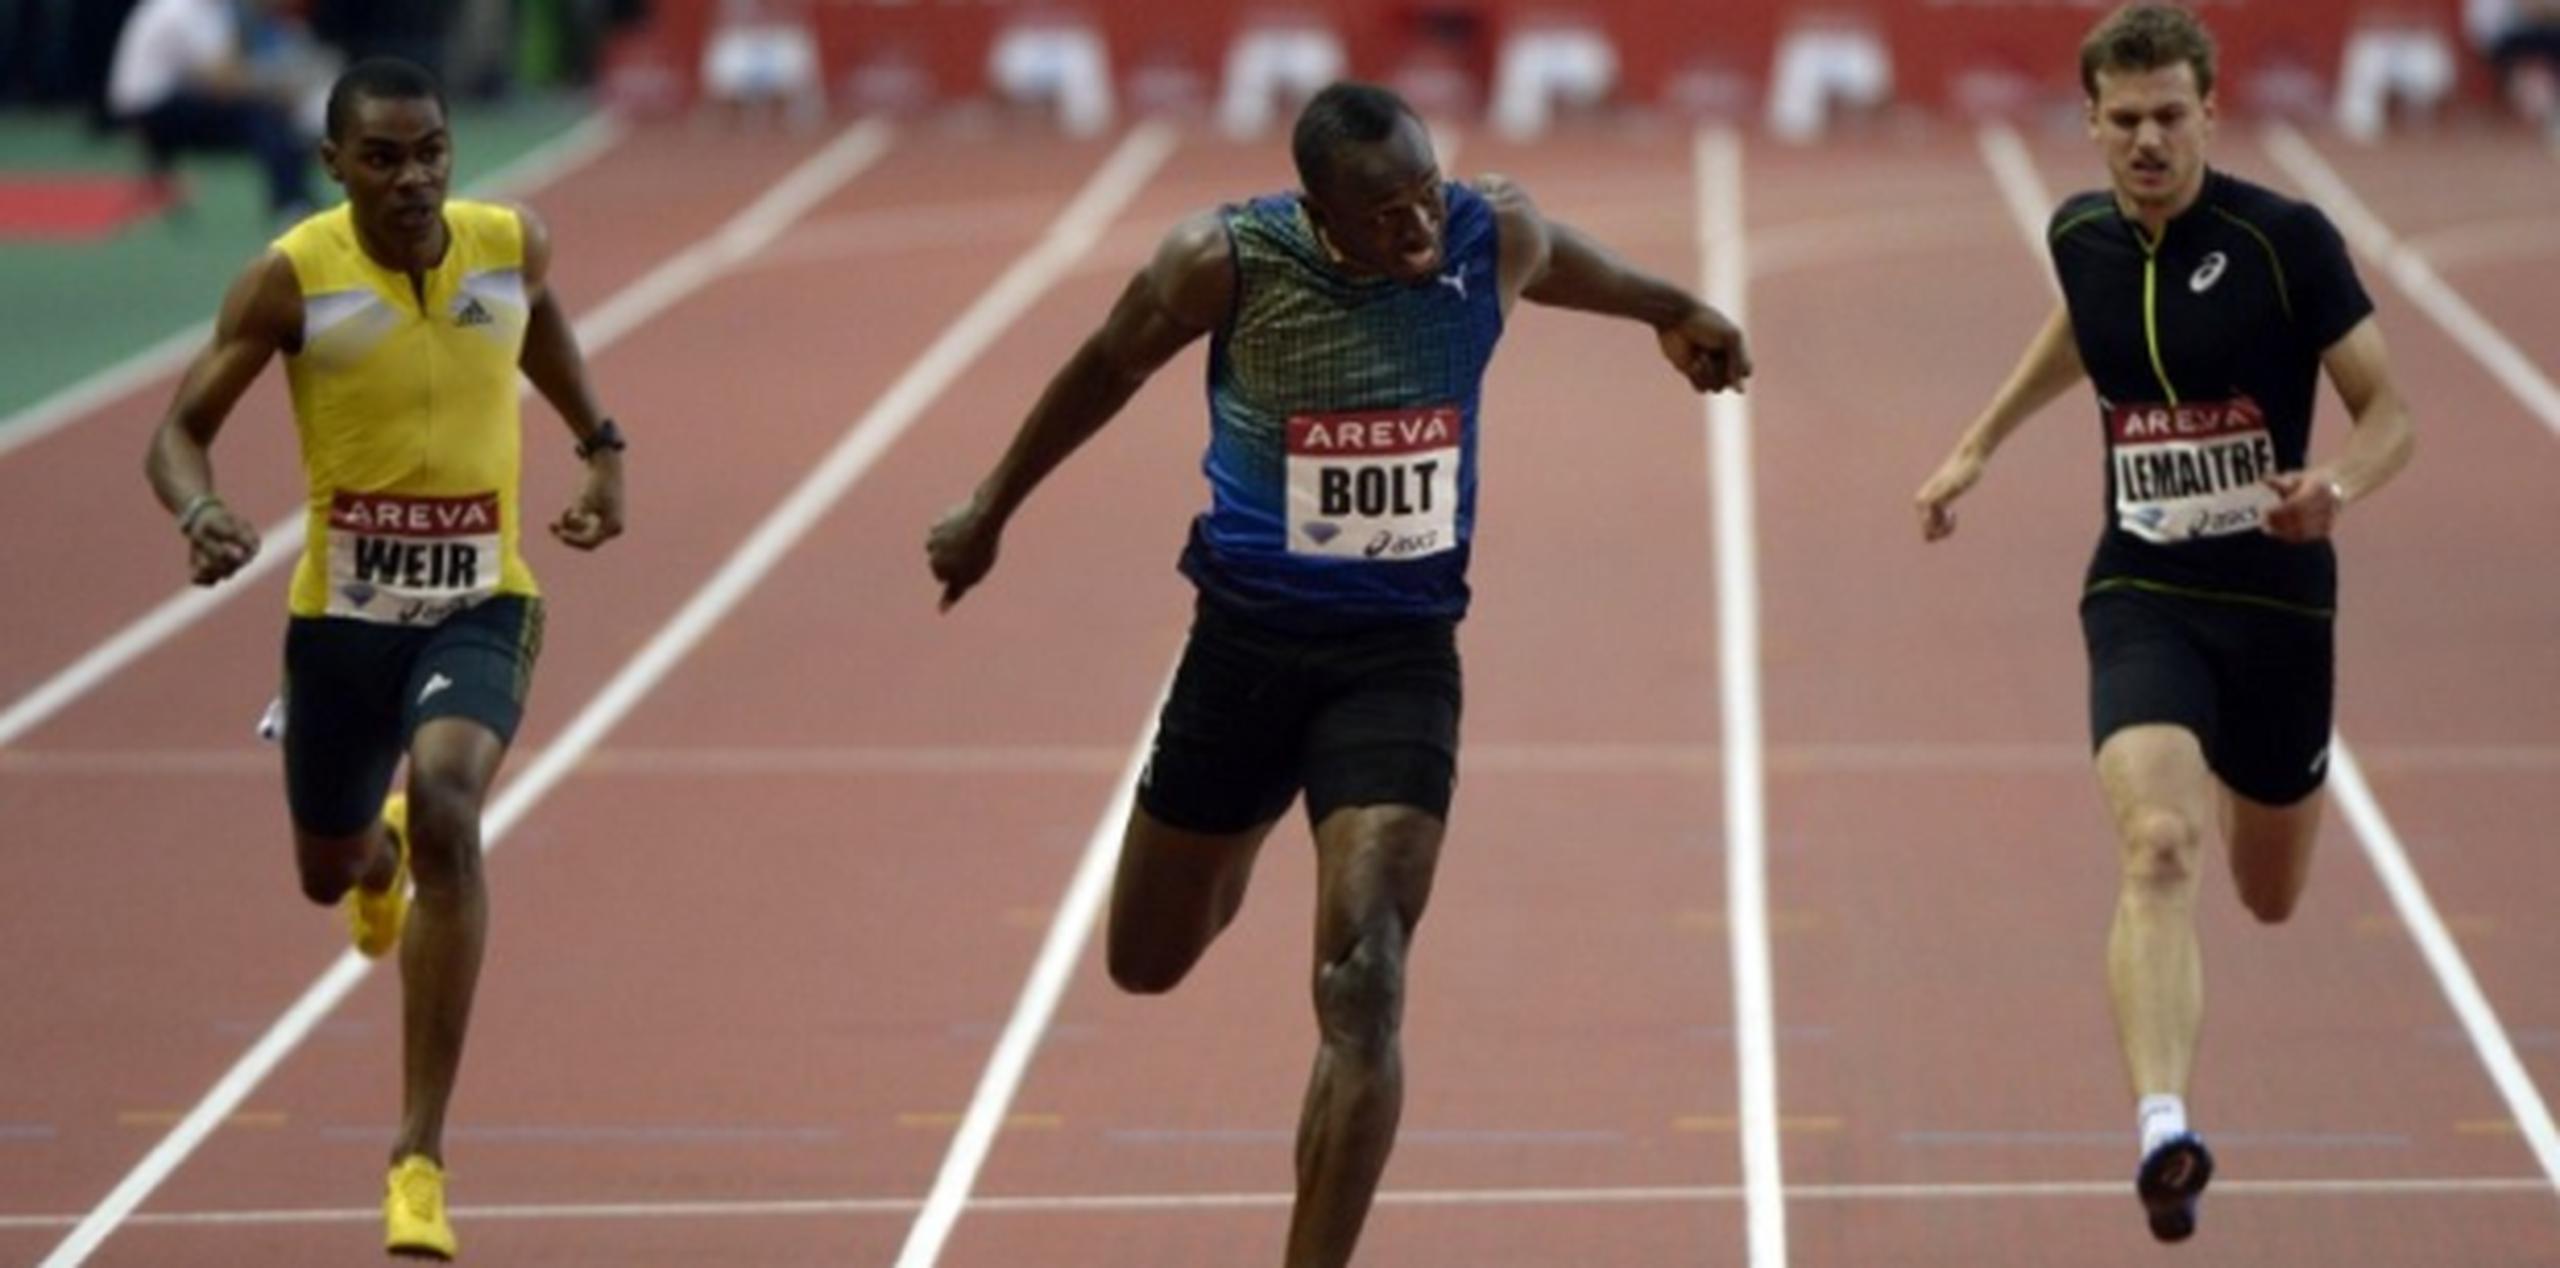 Bolt, séxtuple campeón olímpico y mundial de 100 y 200, se impuso con autoridad en el doble hectómetro de la reunión parisiense. (AFP/Bertrand Guay)